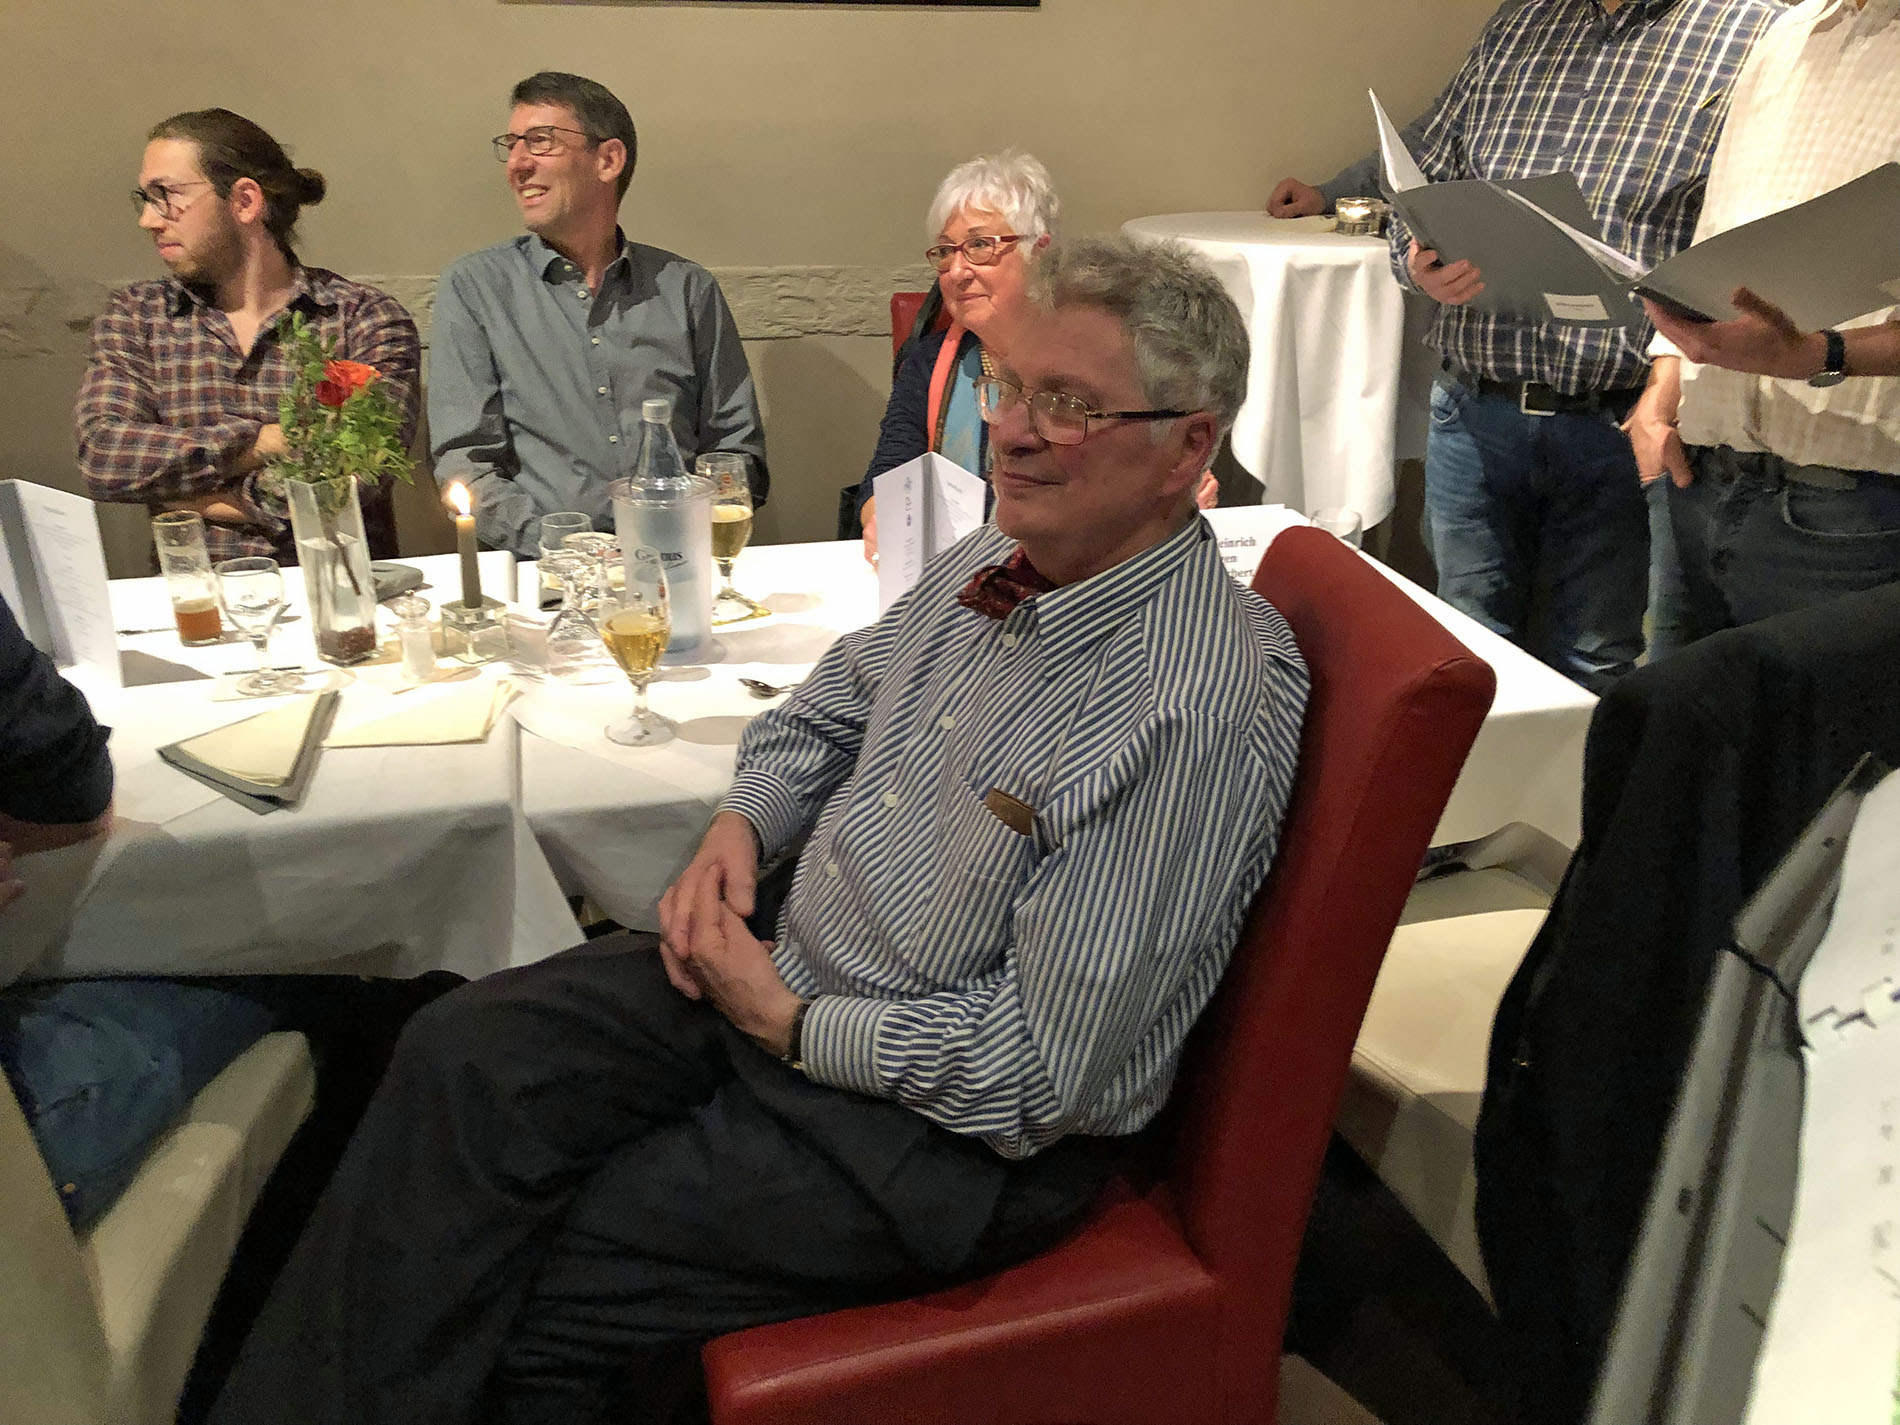 Sichtlich erfreut und überrascht war Jubilar Heinz Dreikhausen (vorne) über den Überraschungsbesuch des Königshovener Quartettverein während seiner Geburtstagsfeier zum 80. (Fotos: Willi Schlößer)